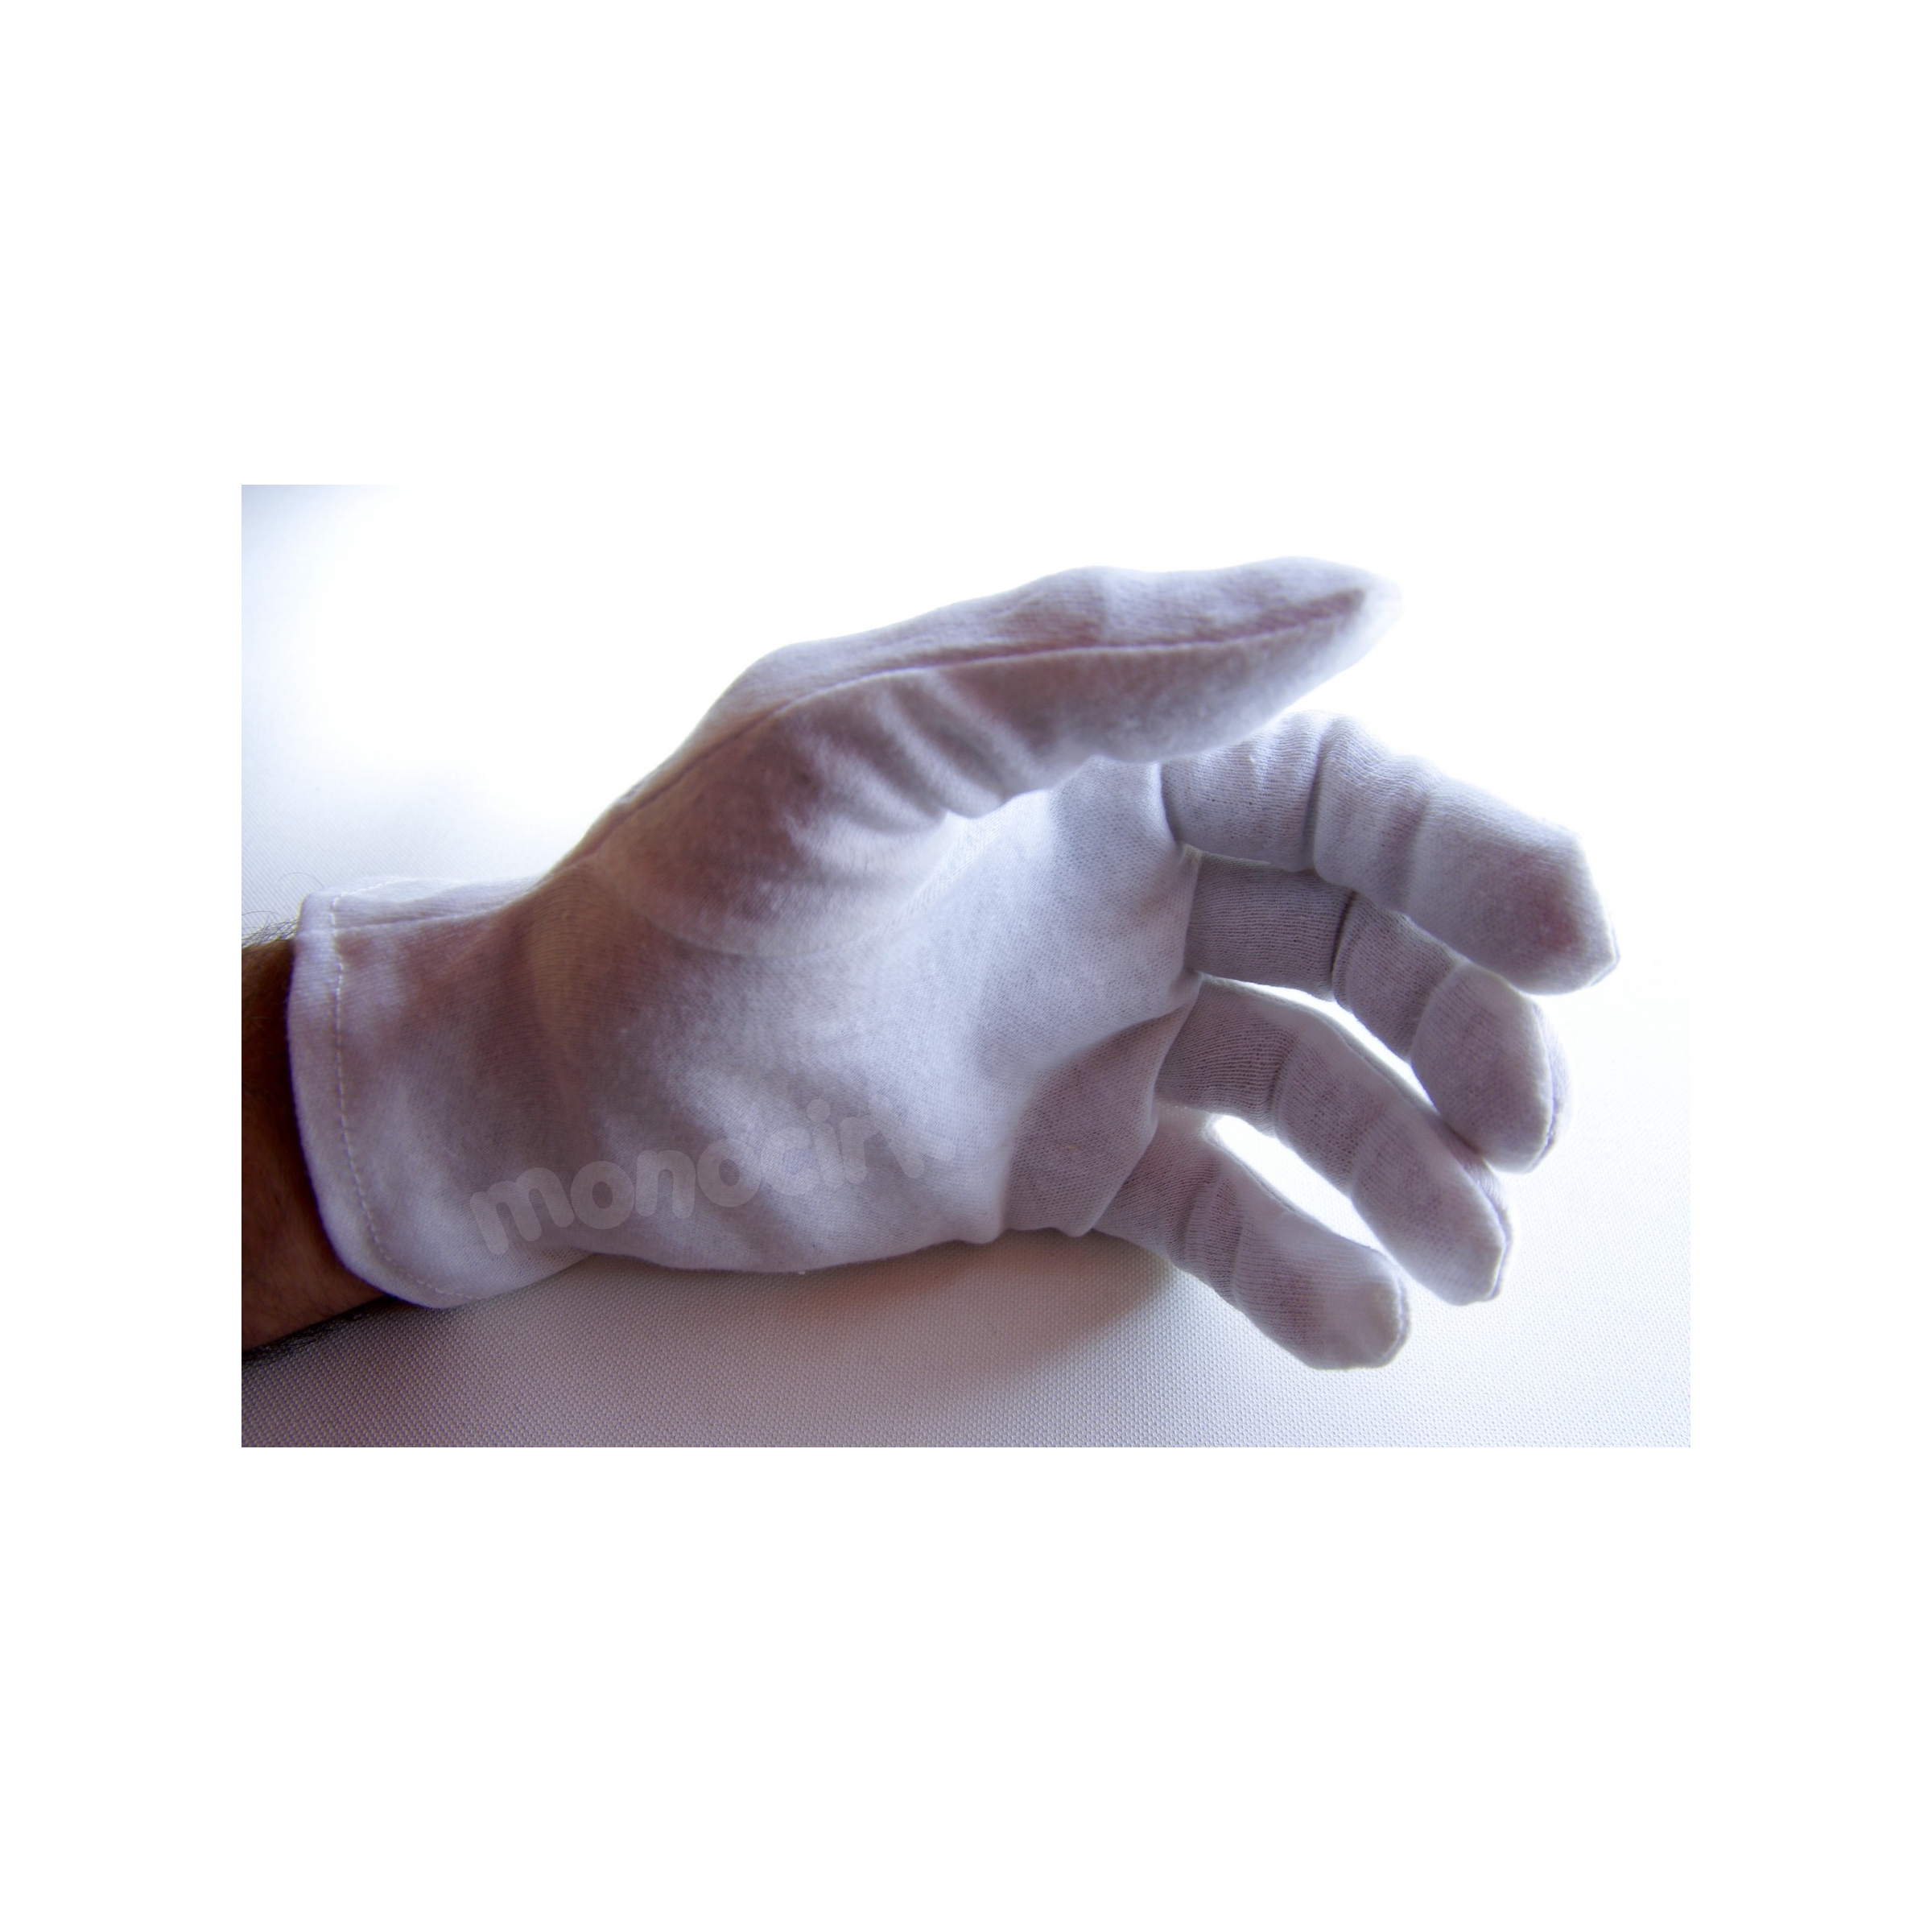 paire de gants blancs fluo pour la scène, Nantes 44 magasin cirque